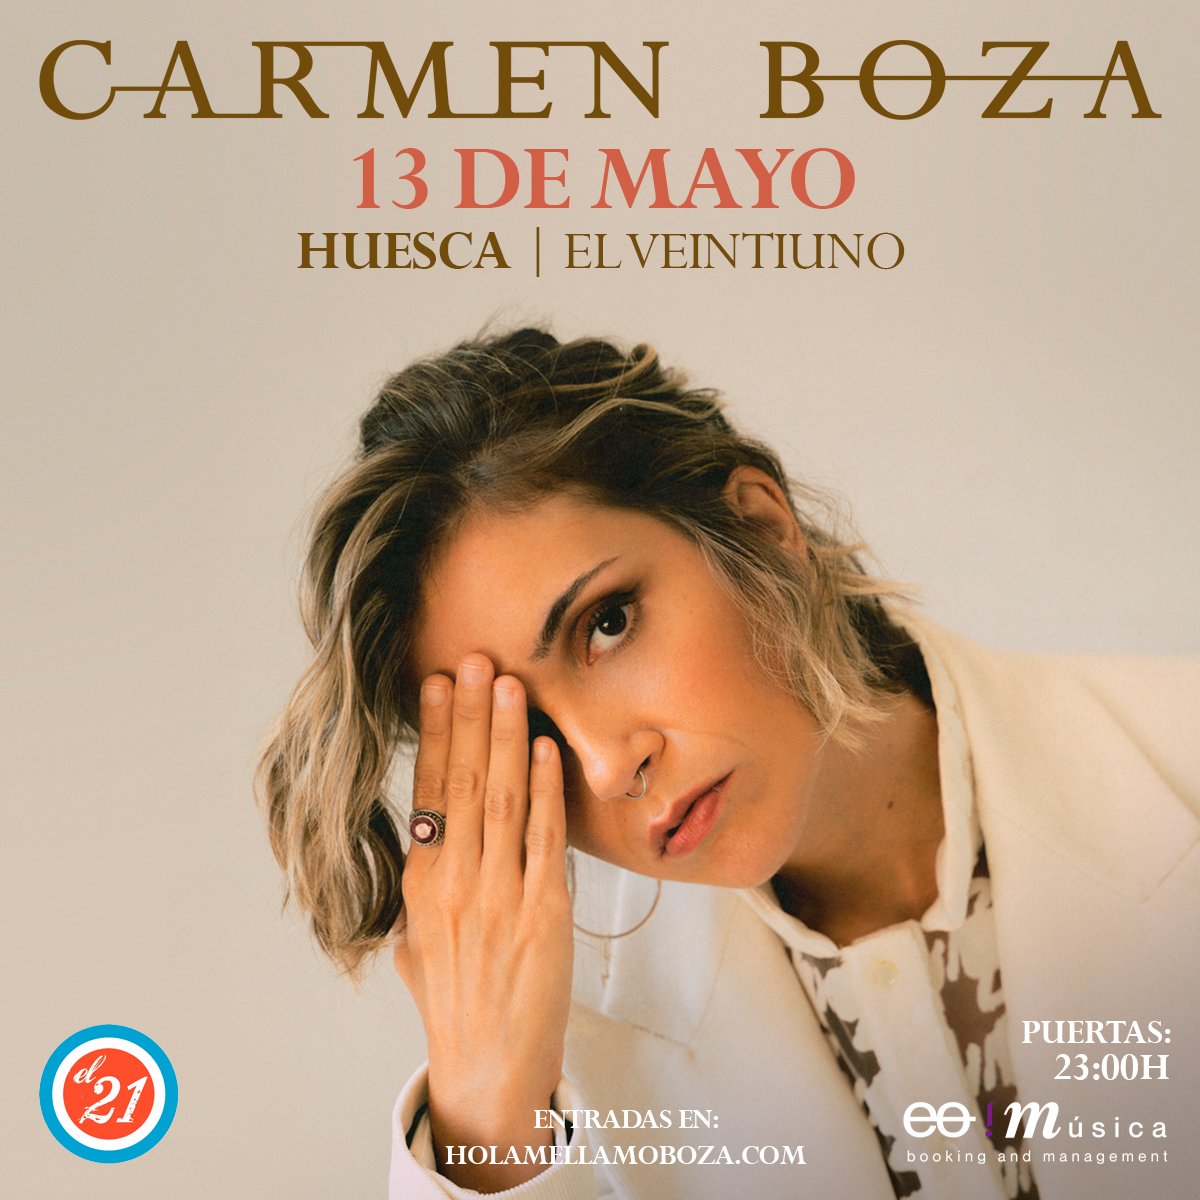 Carmen Boza en Huesca